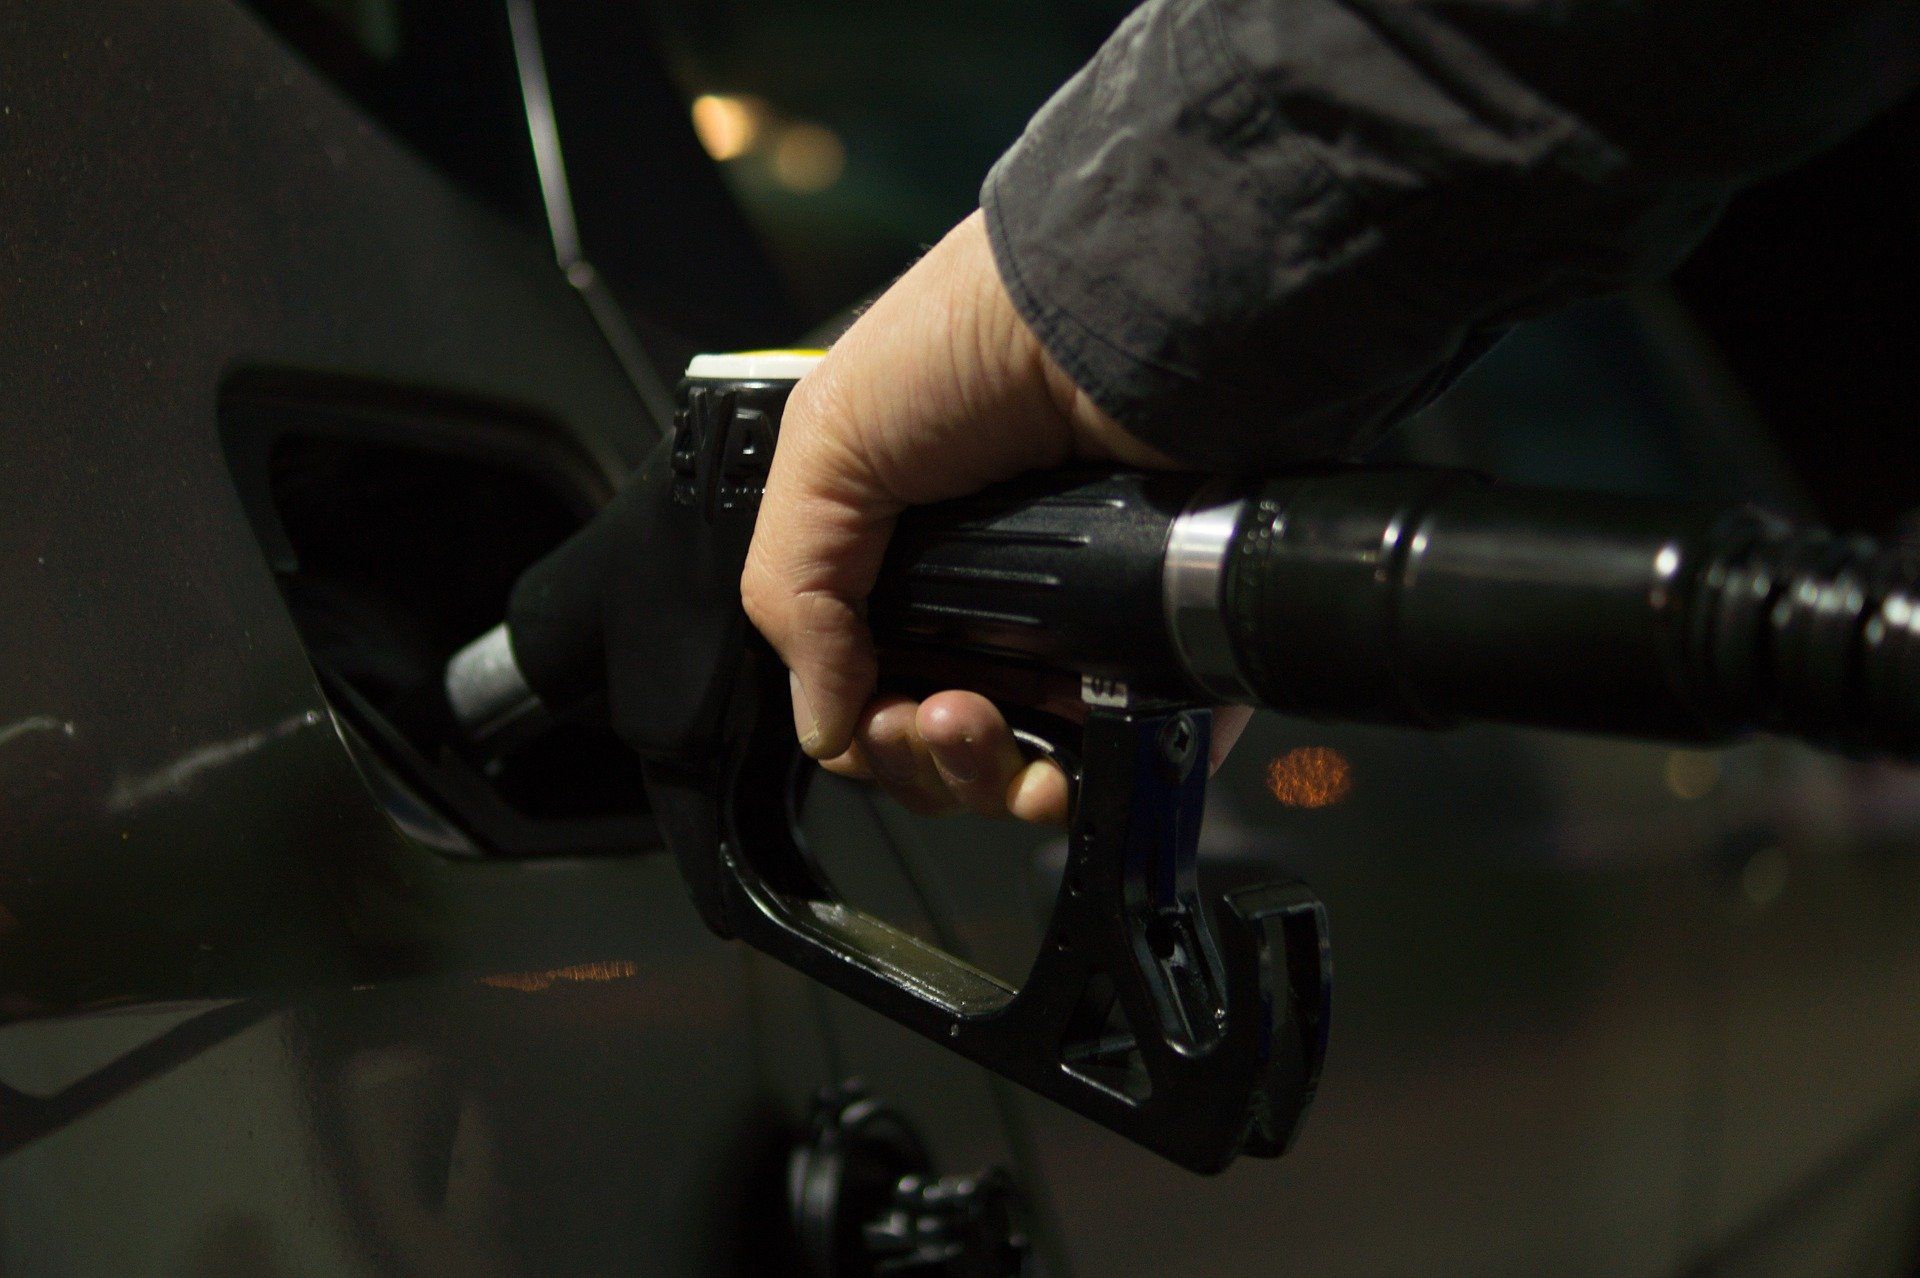 Fuel price June 24, 2022: Petrol Rs 96.72, diesel Rs 89.62 in Delhi